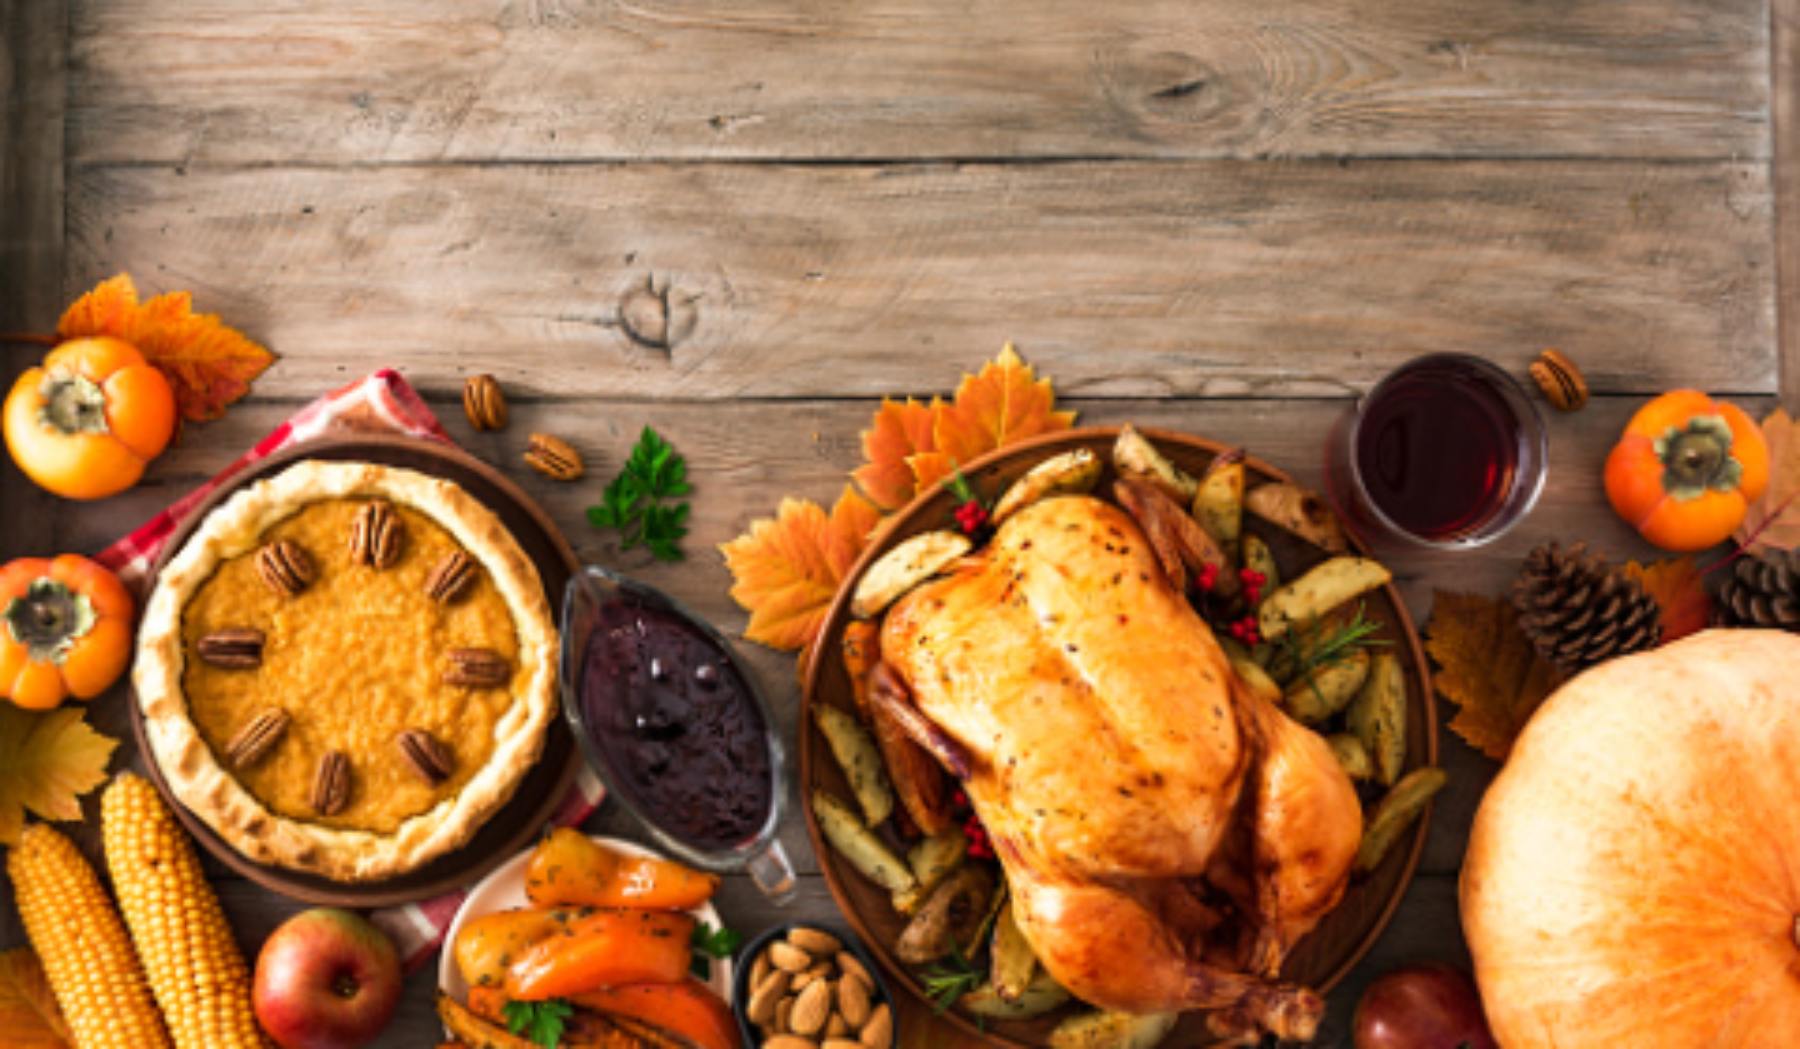 El menú más rico y fácil para celebrar el Día de Acción de Gracias